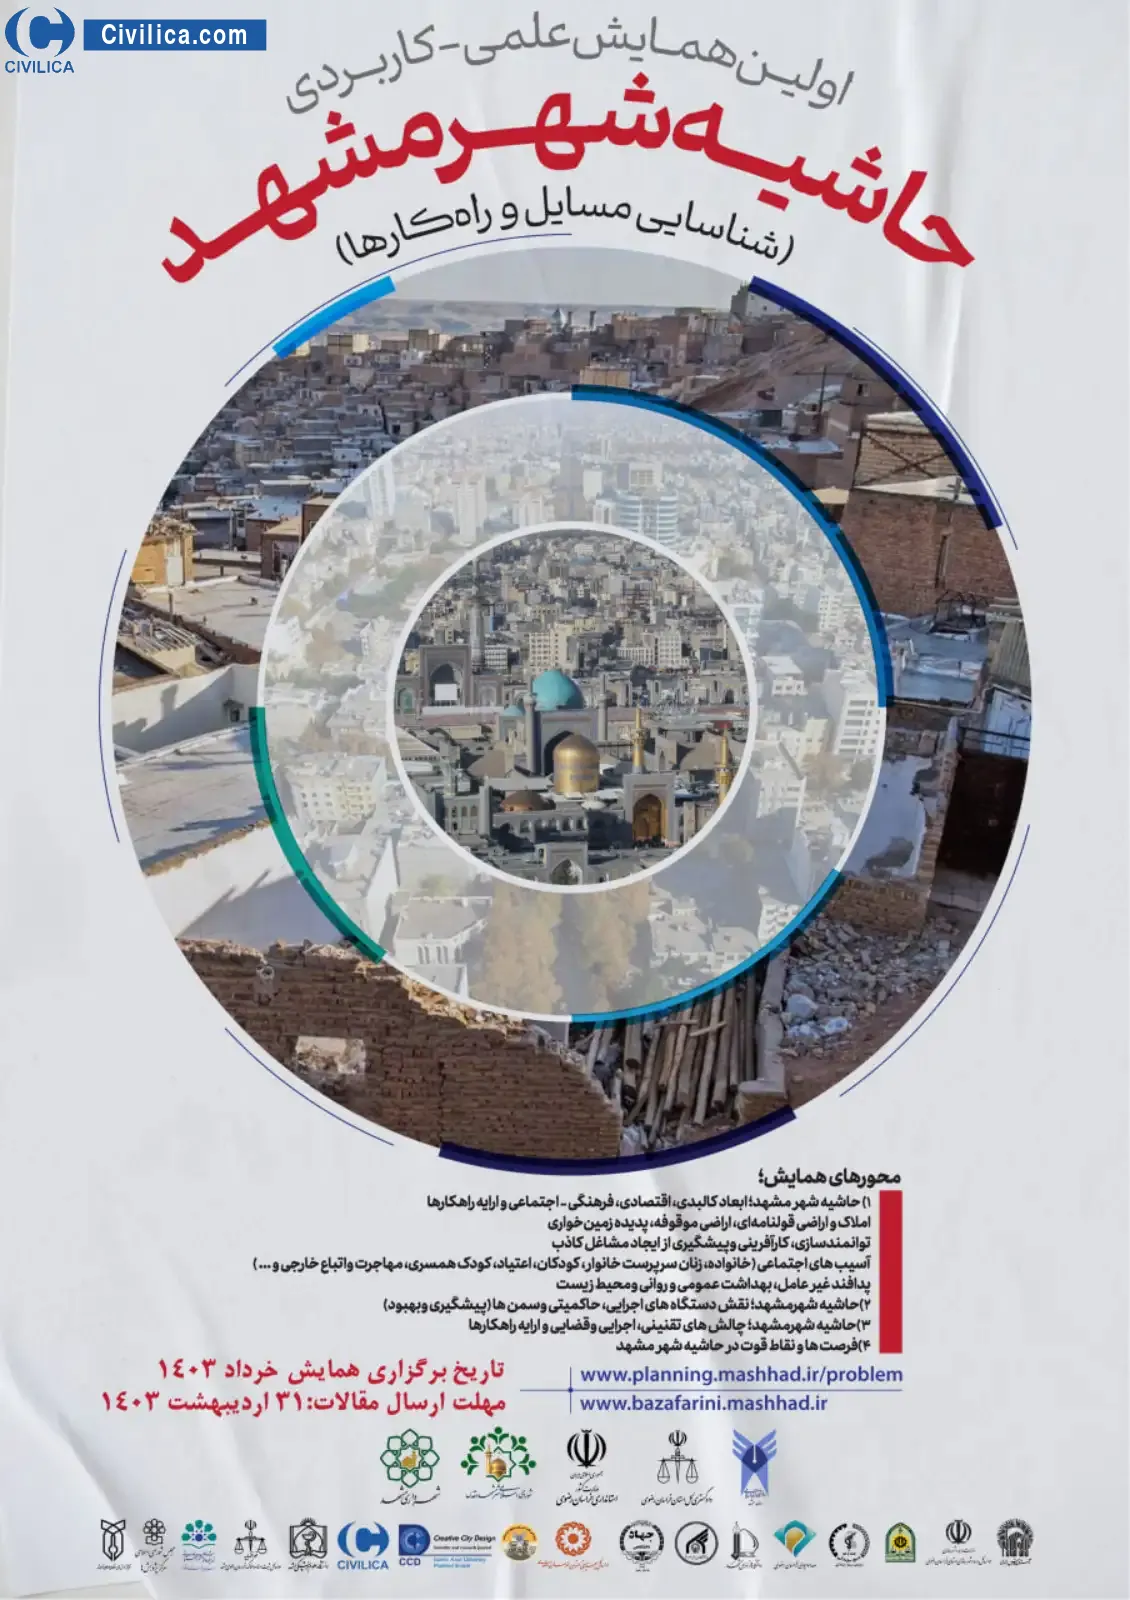 فراخوان مقاله اولین همایش حاشیه شهر مشهد (شناسایی مسائل و ارائه راه کارها )